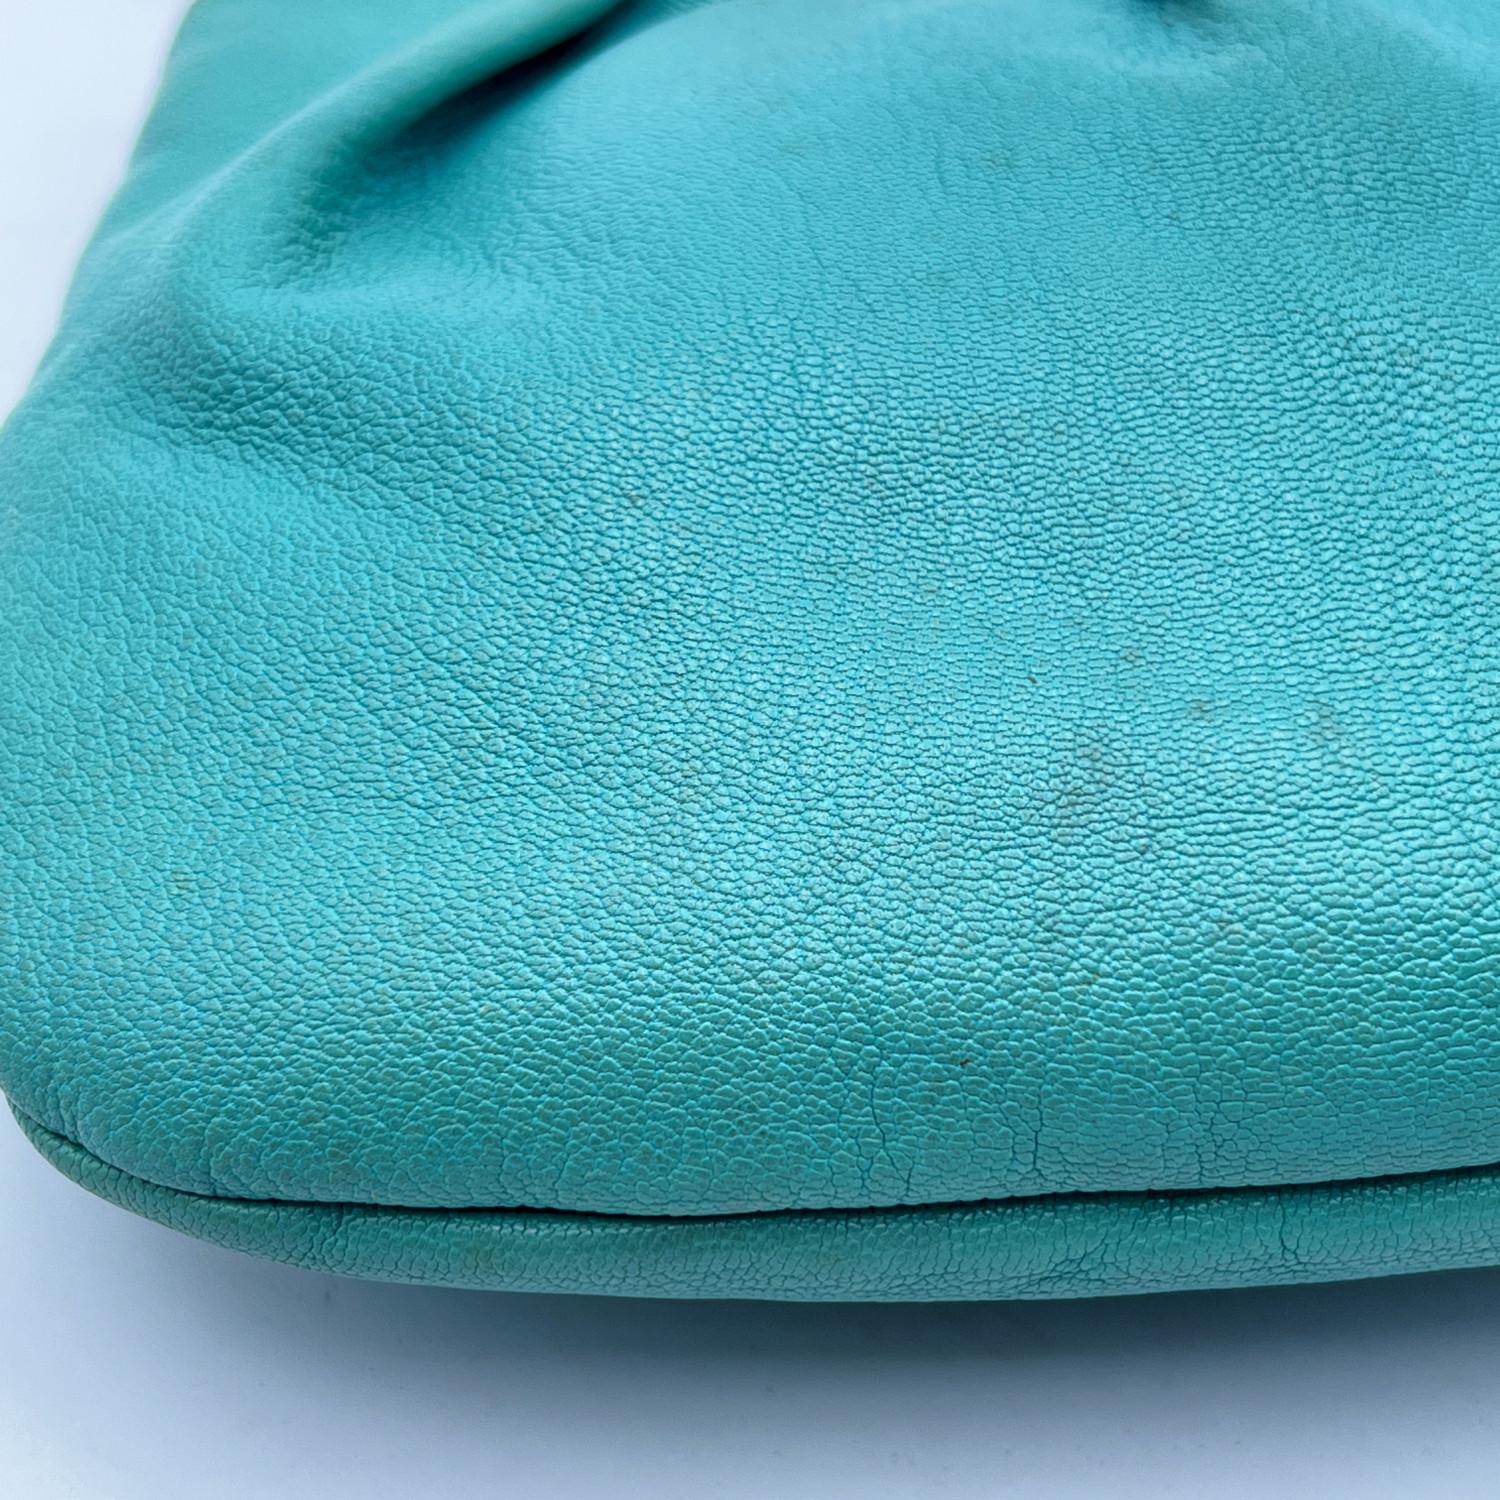 Gucci Turquoise Leather Bamboo Studded Handbag Tote Bag 4